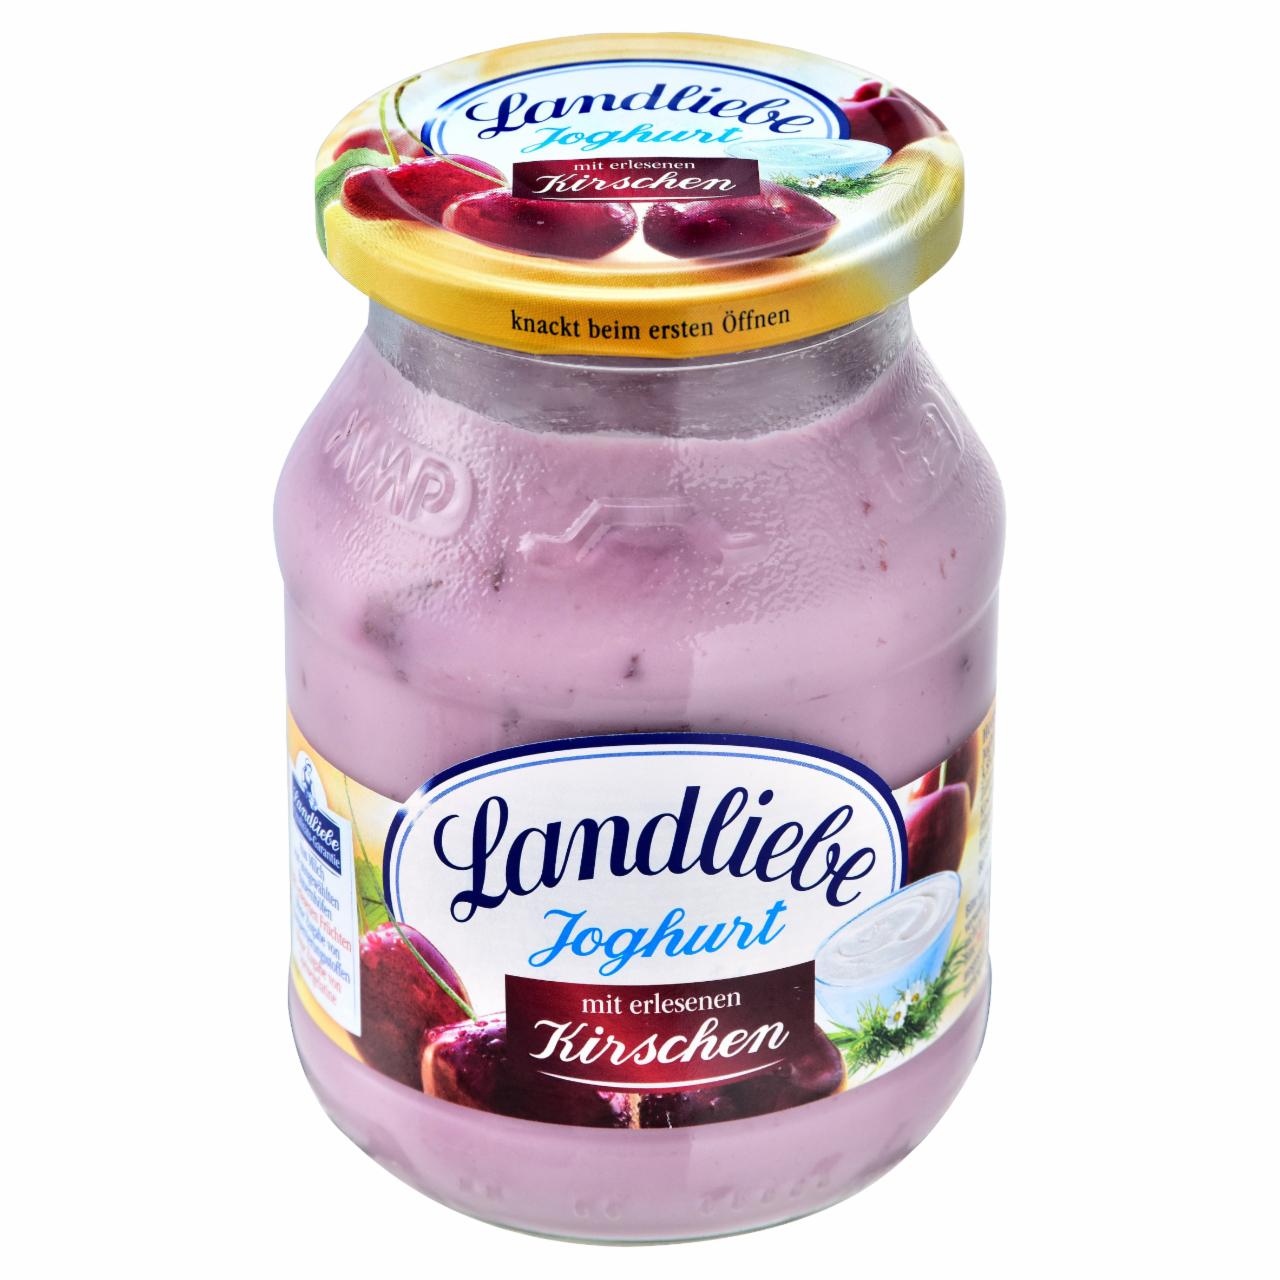 Képek - Landliebe joghurt zamatos cseresznyével 500 g